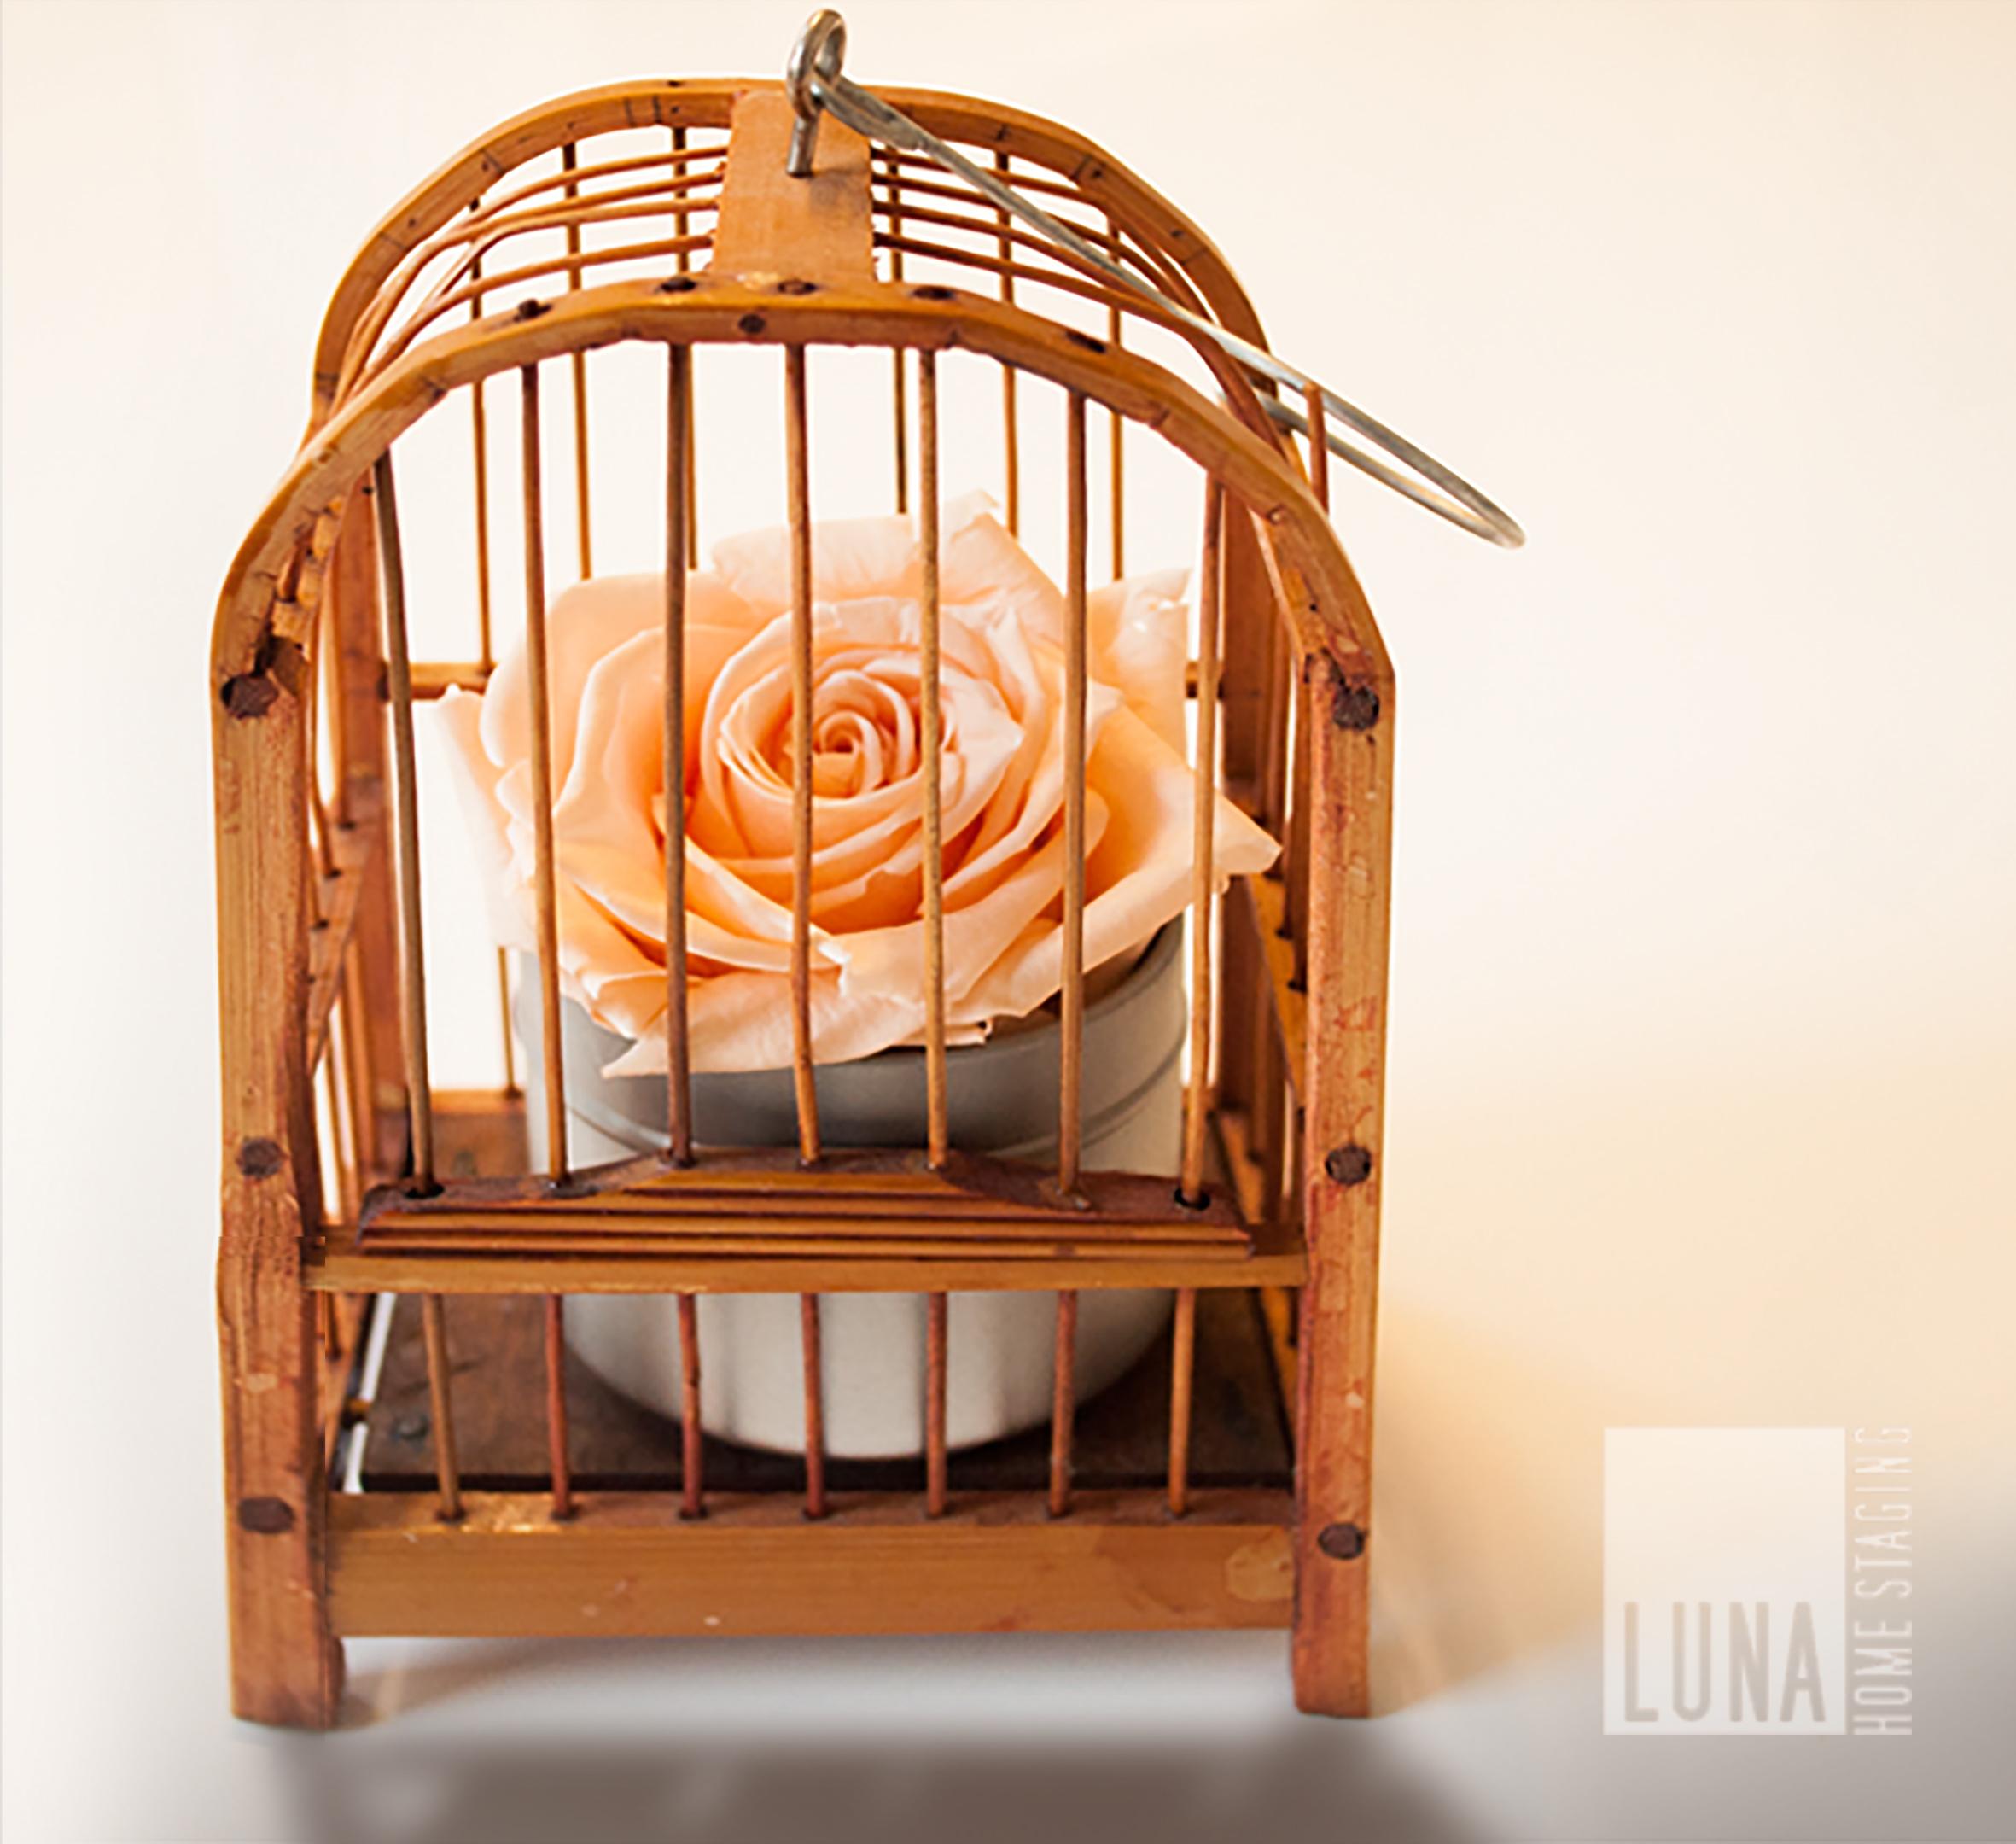 Käfig mit rose #blumendeko #vogelkäfig #geschenkidee ©Luna Homestaging